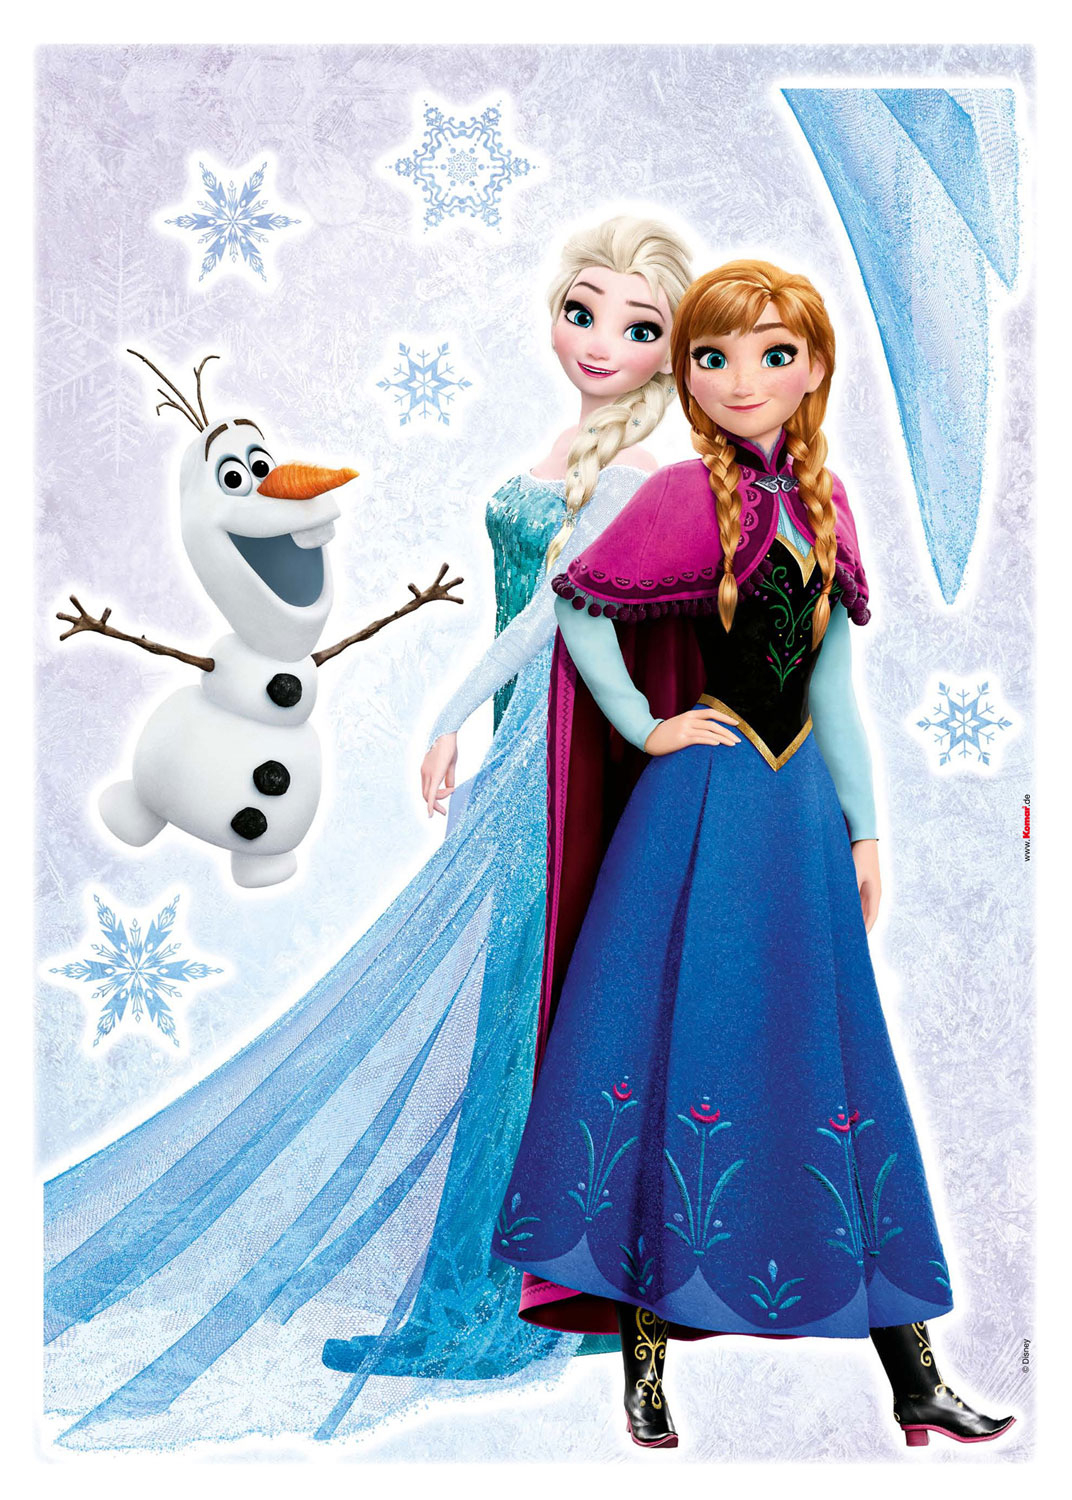 Wandsticker Eiskönigin Frozen Sisters bestimmt für Anna Und Elsa Bilder